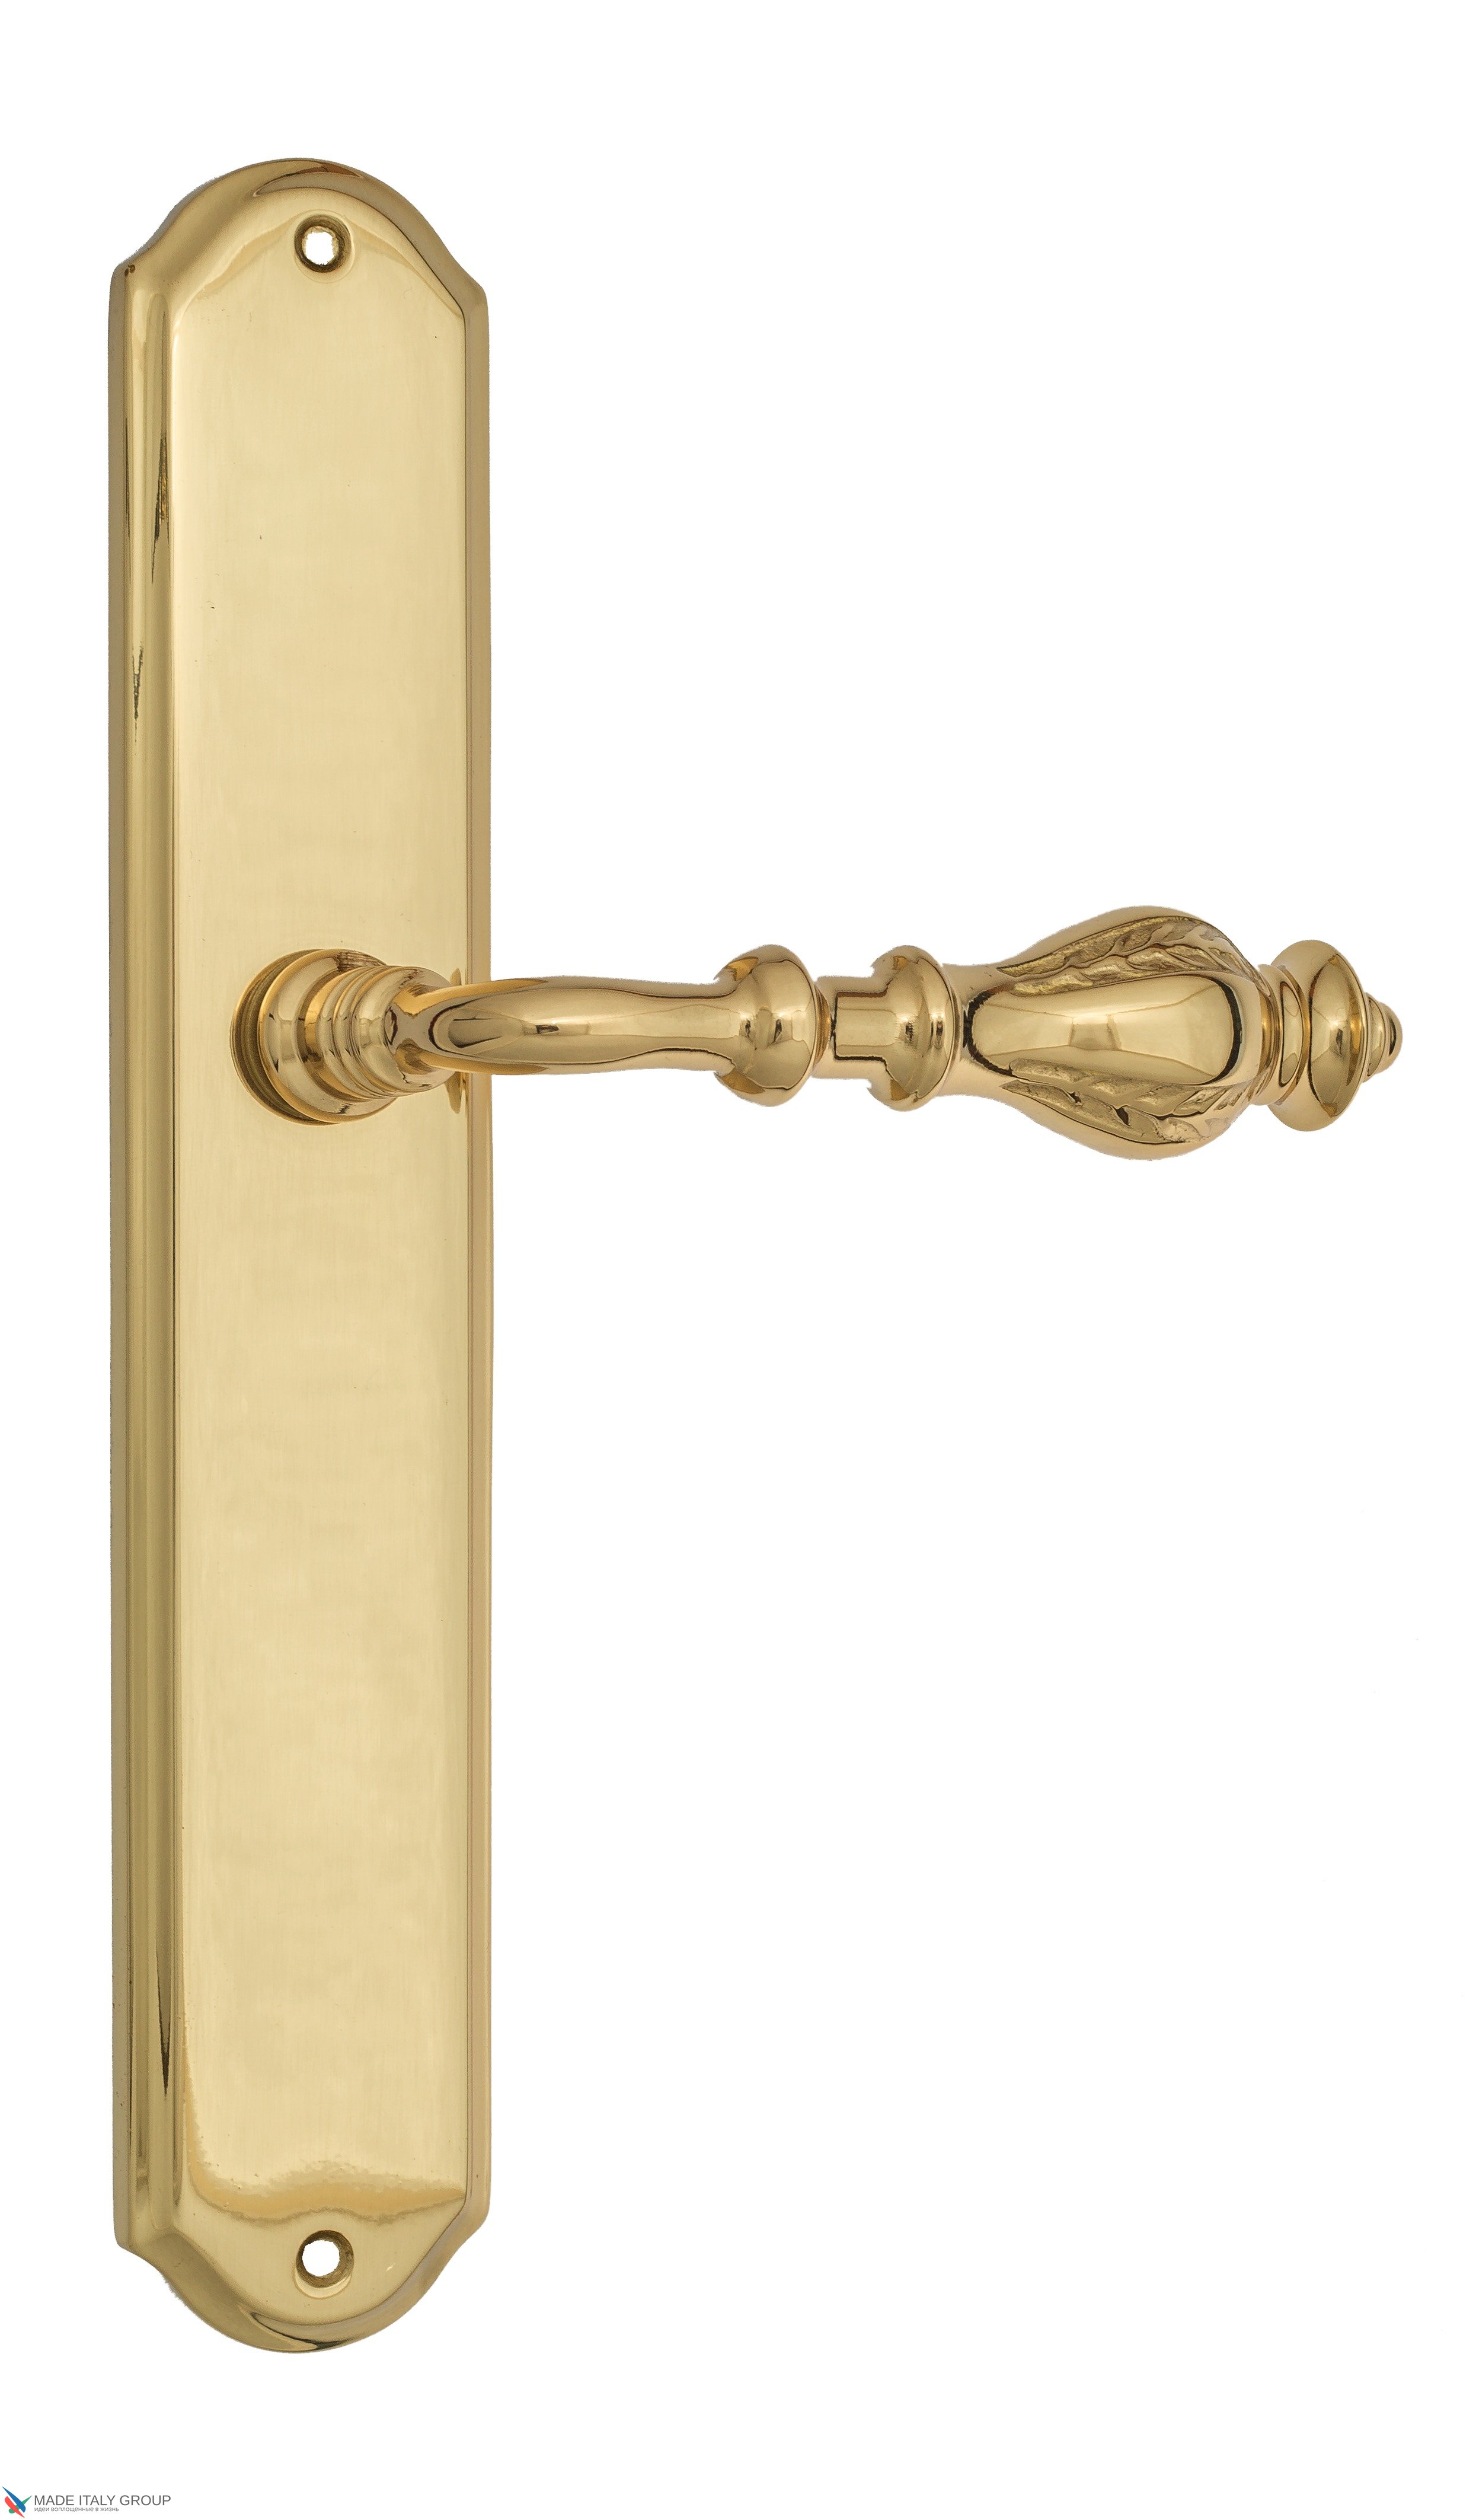 Дверная ручка Venezia "GIFESTION" на планке PL02 полированная латунь